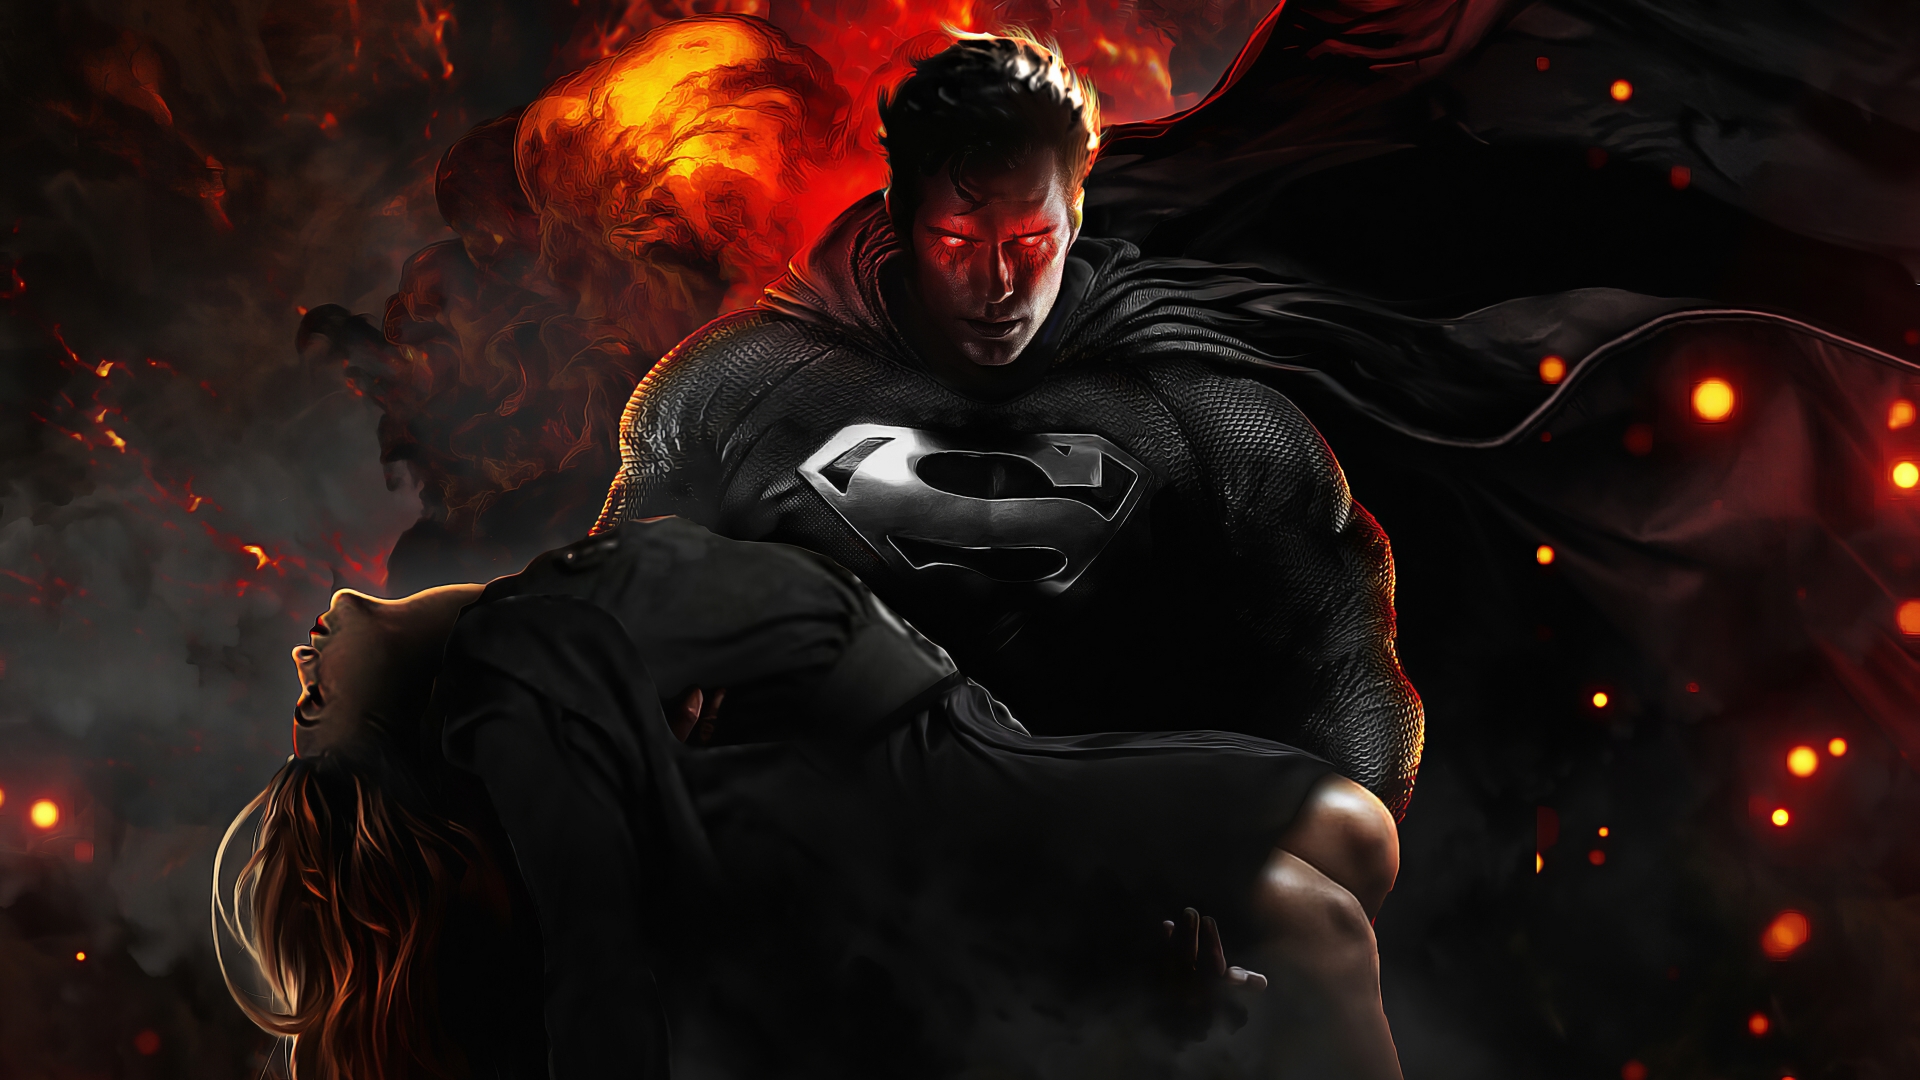 Superman in Justice league Wallpaper 4k Ultra HD ID:5214